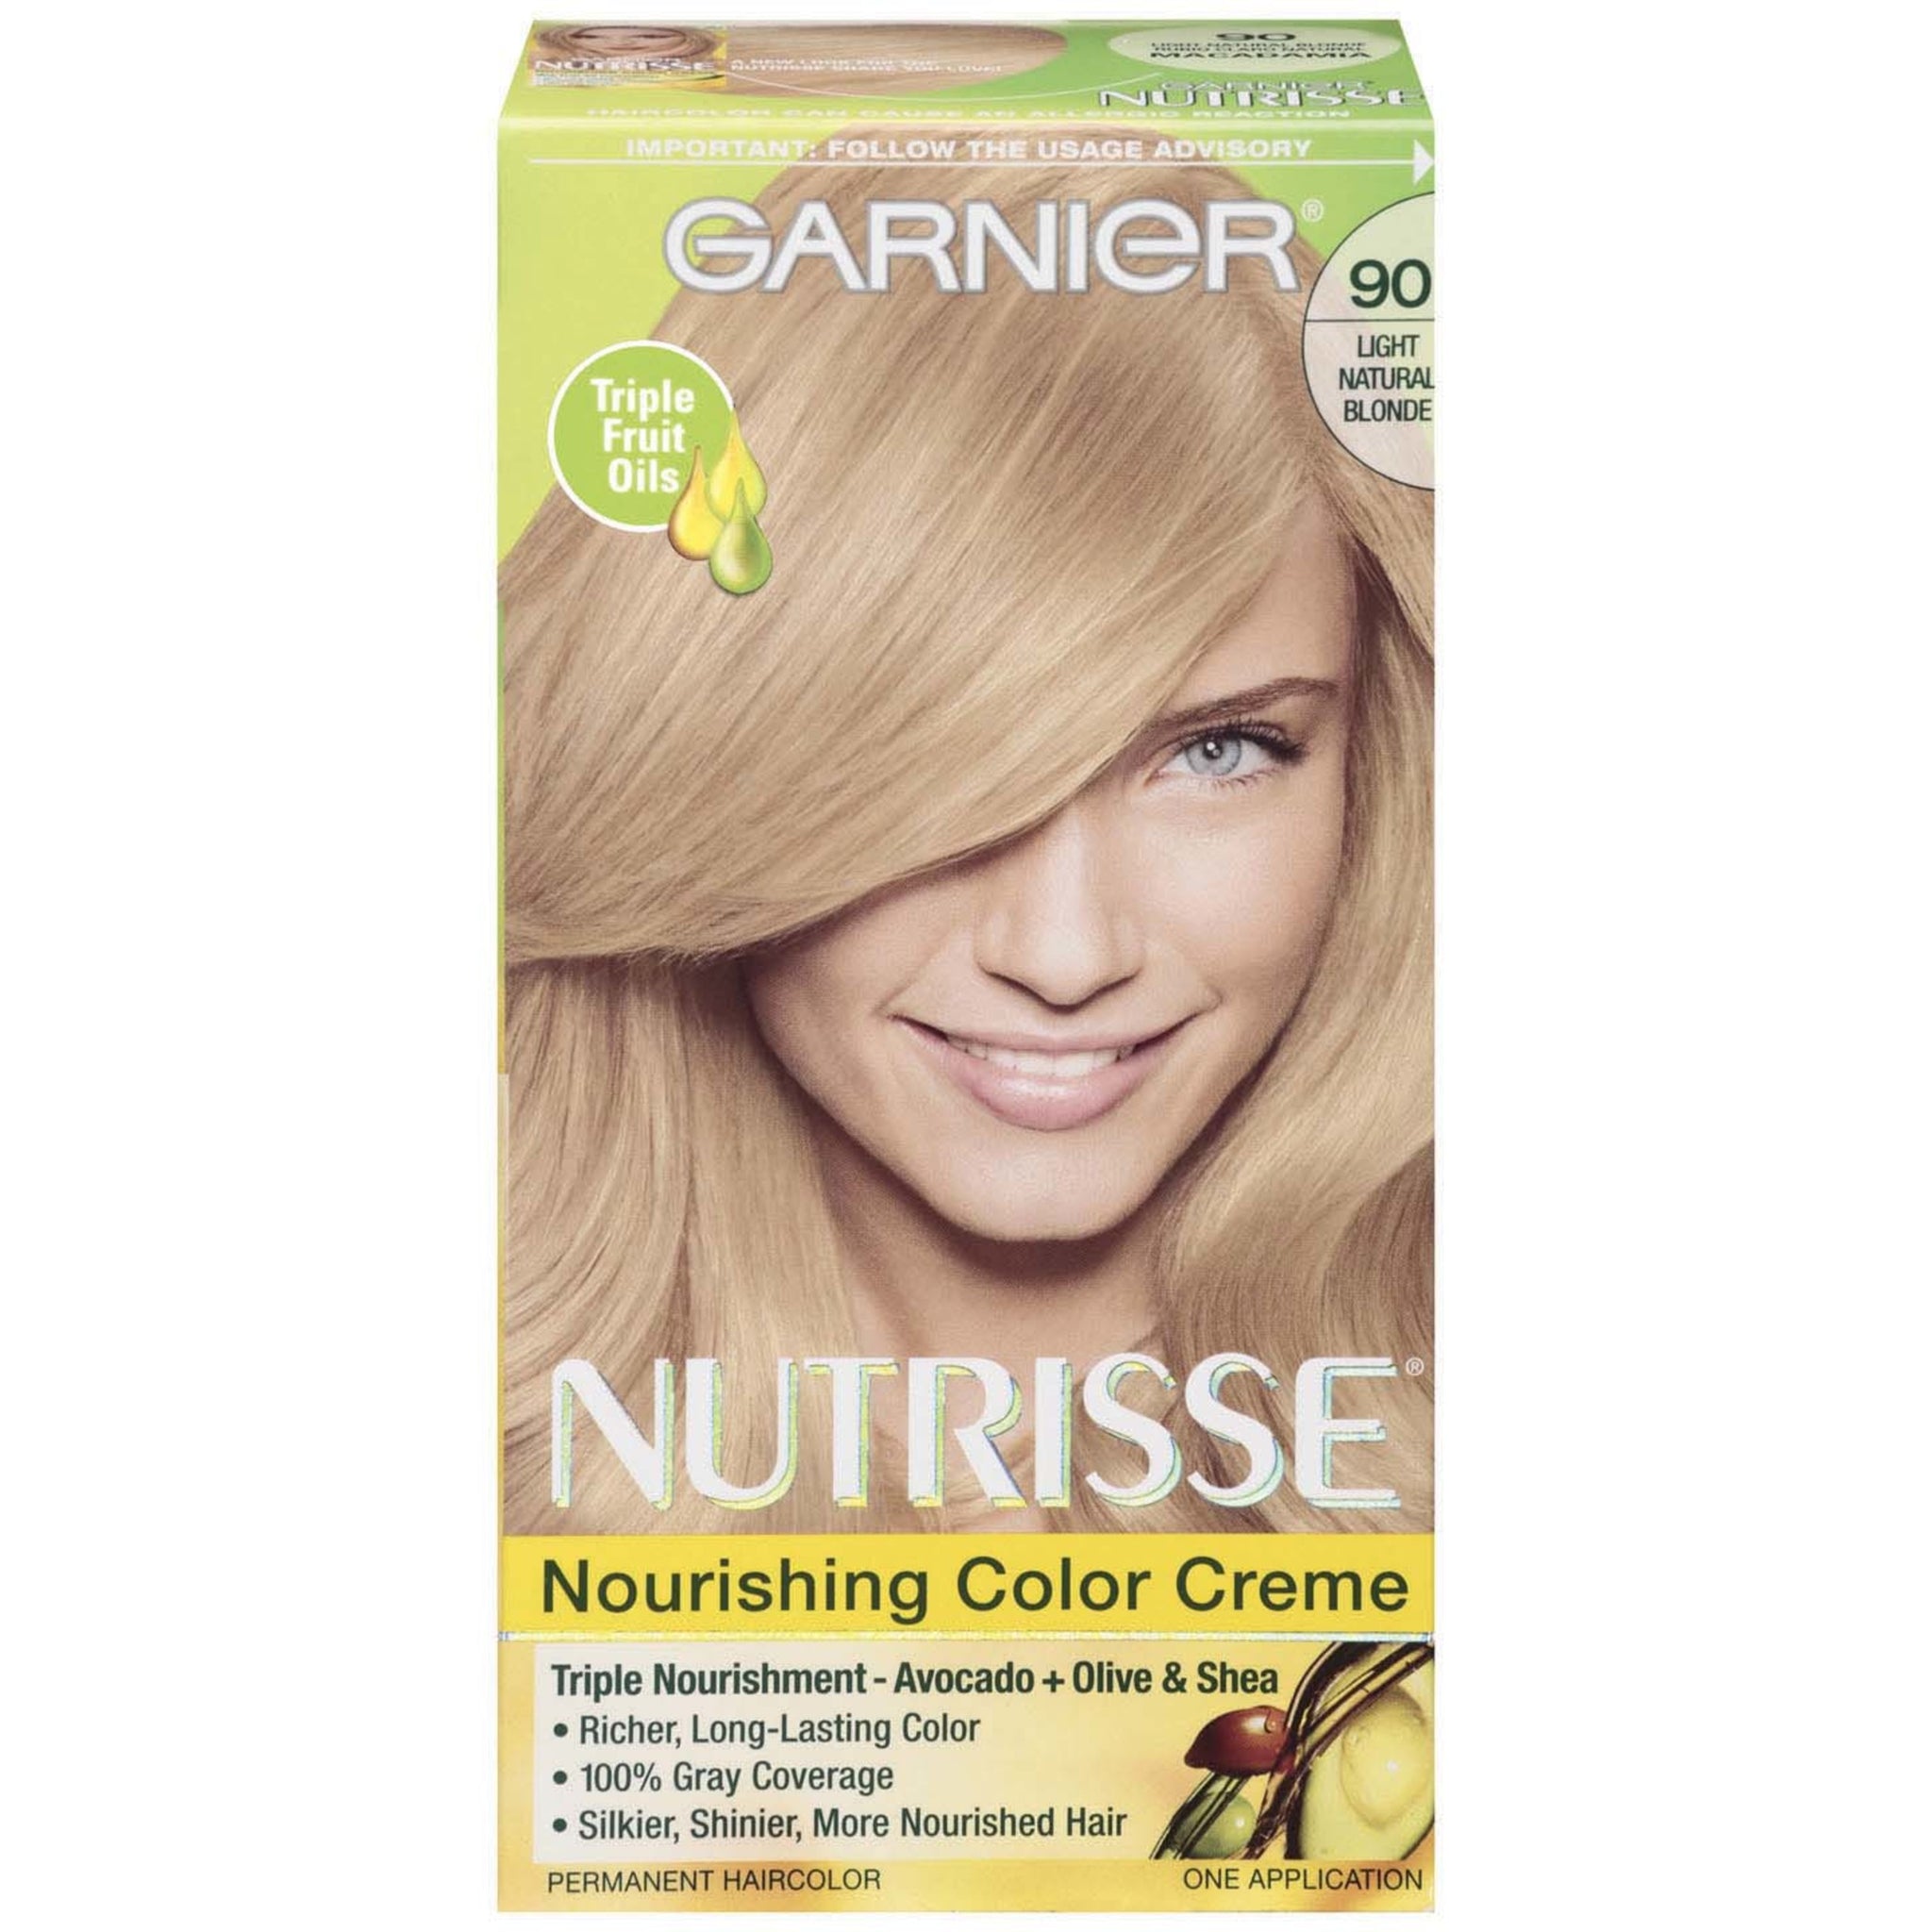 Nutrisse Nourishing Permanent Hair Color Creme